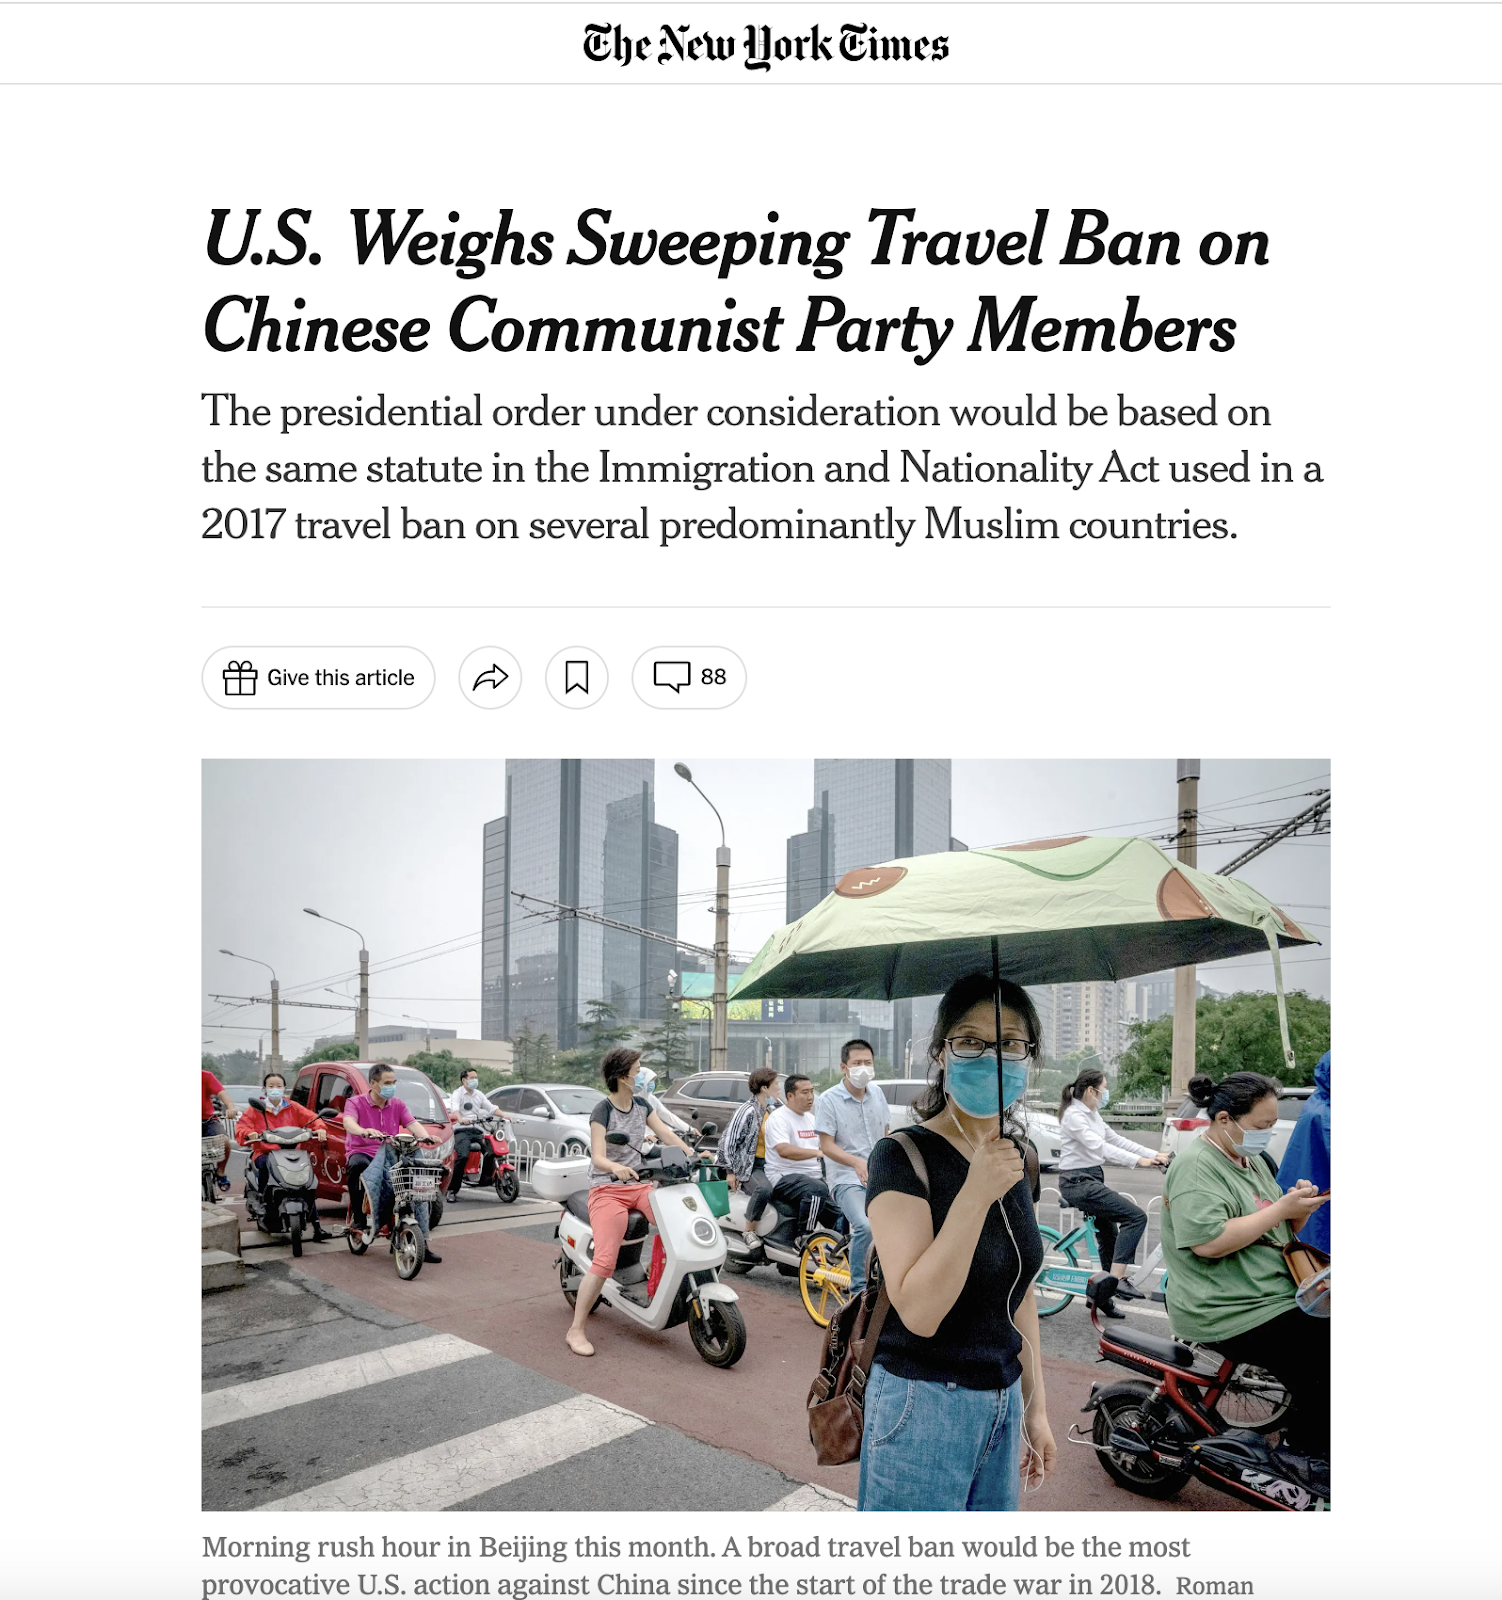 美国禁止中共党员入境新闻报道根据《美国纽约时报》2020年7月15日一篇文章中报道称美国政府正在考虑针对中国共产党党员实施旅行禁令的措施。根据该报道，该措施将会限制中国共产党党员及其家属进入美国，由于此前中美关系极为紧张，发布该消息的目的是打击中国政府的一些行为，包括对香港和新疆地区的管控以及在南海和台海地区的行动。

但这个消息很片面，因为根据最新的使馆信息，即使是党员身份也是可以申请出美签的，虽然这个消息存在，但它仅仅是未经证实的消息，目前并没有被正式宣布或实施，所以不用惊慌。